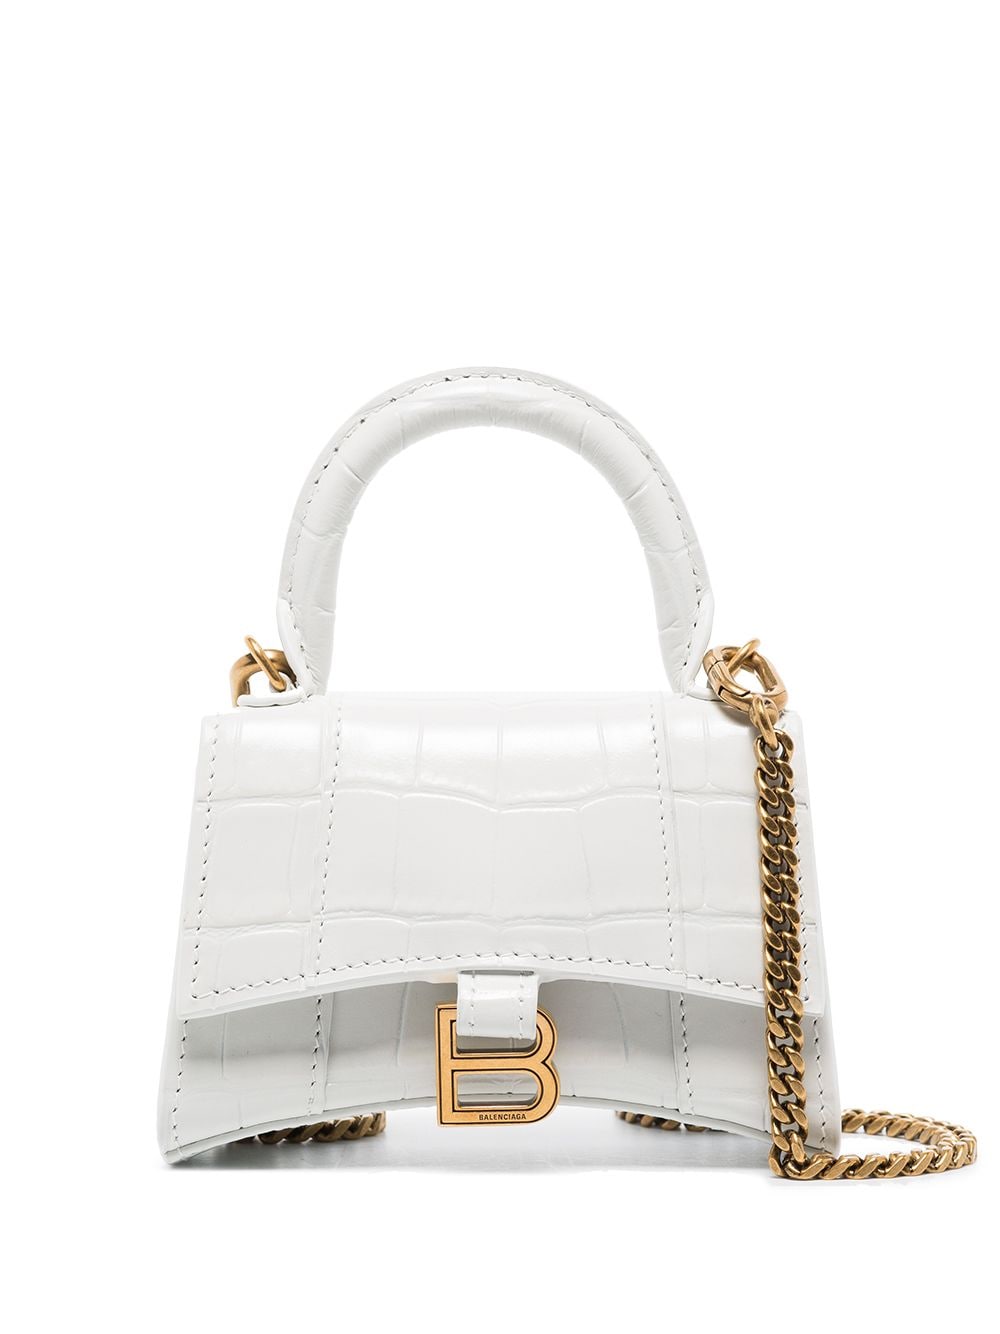 Balenciaga Hourglass mini bag - White